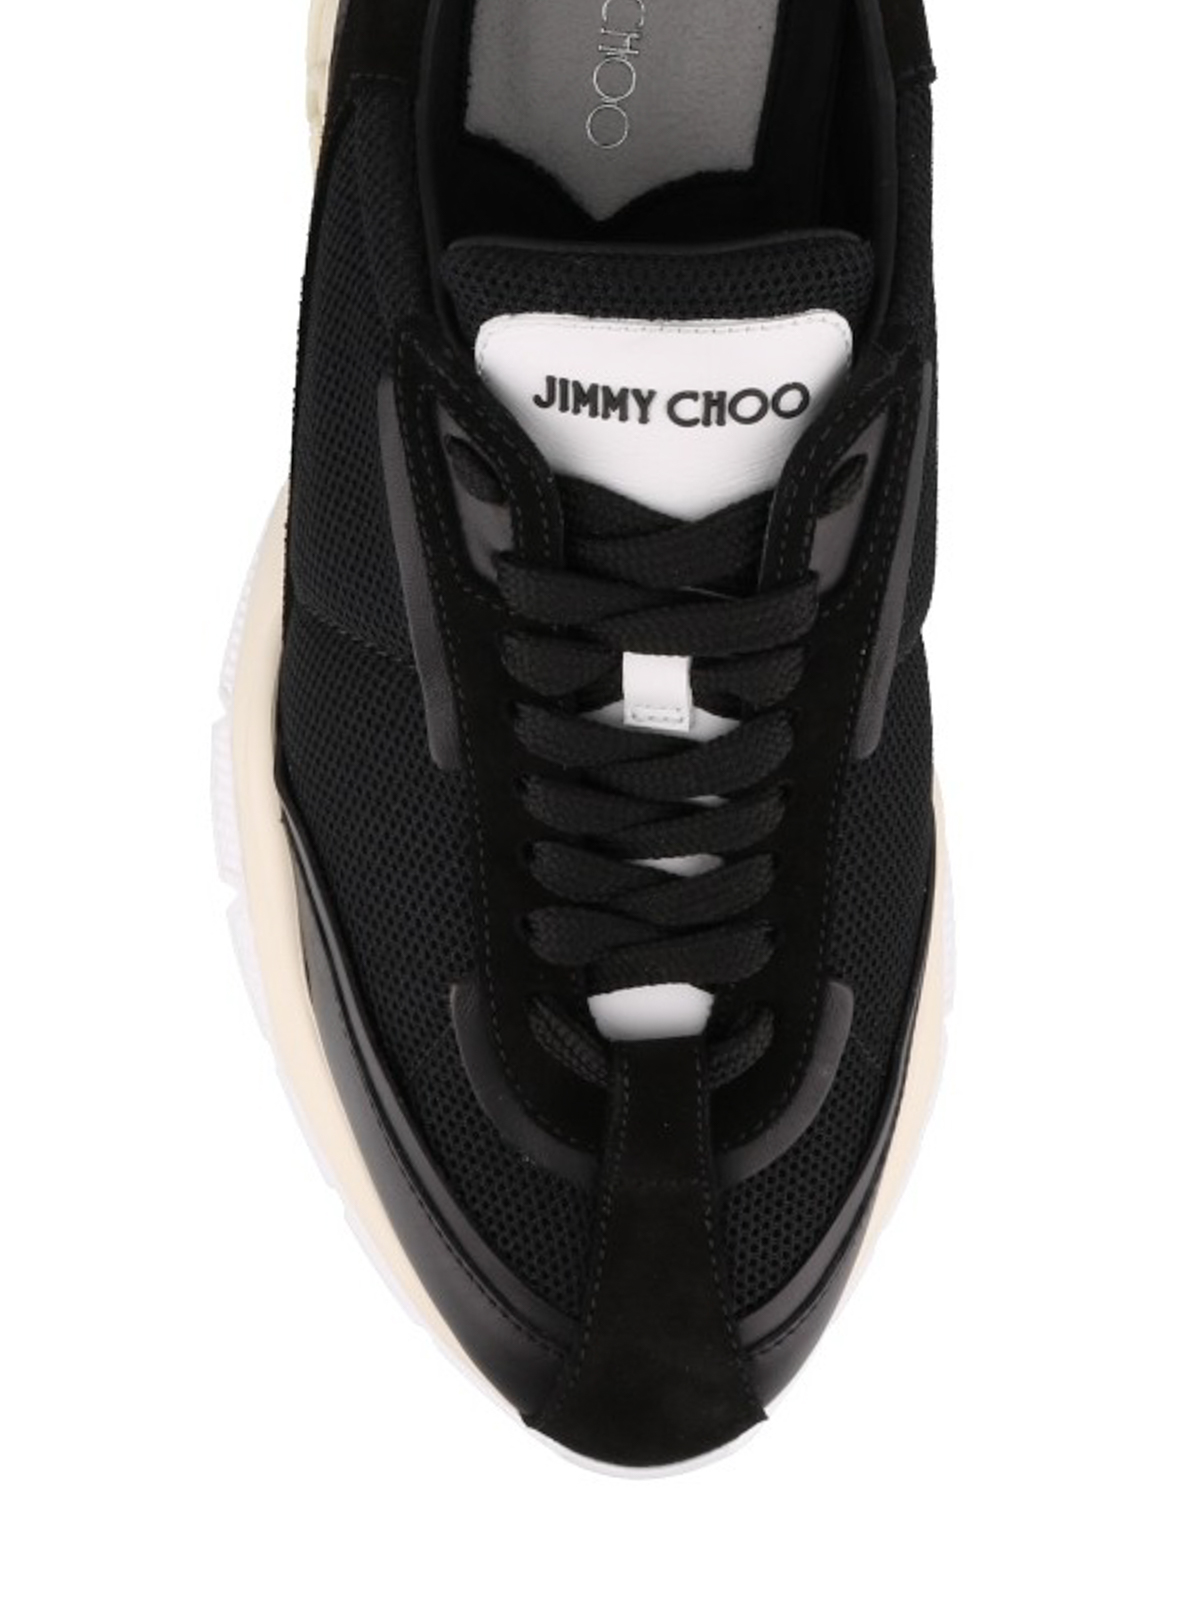 Interessant Denk vooruit Adverteerder Trainers Jimmy Choo - Raine black sneakers - RAINEMAHSBLACKBLACK